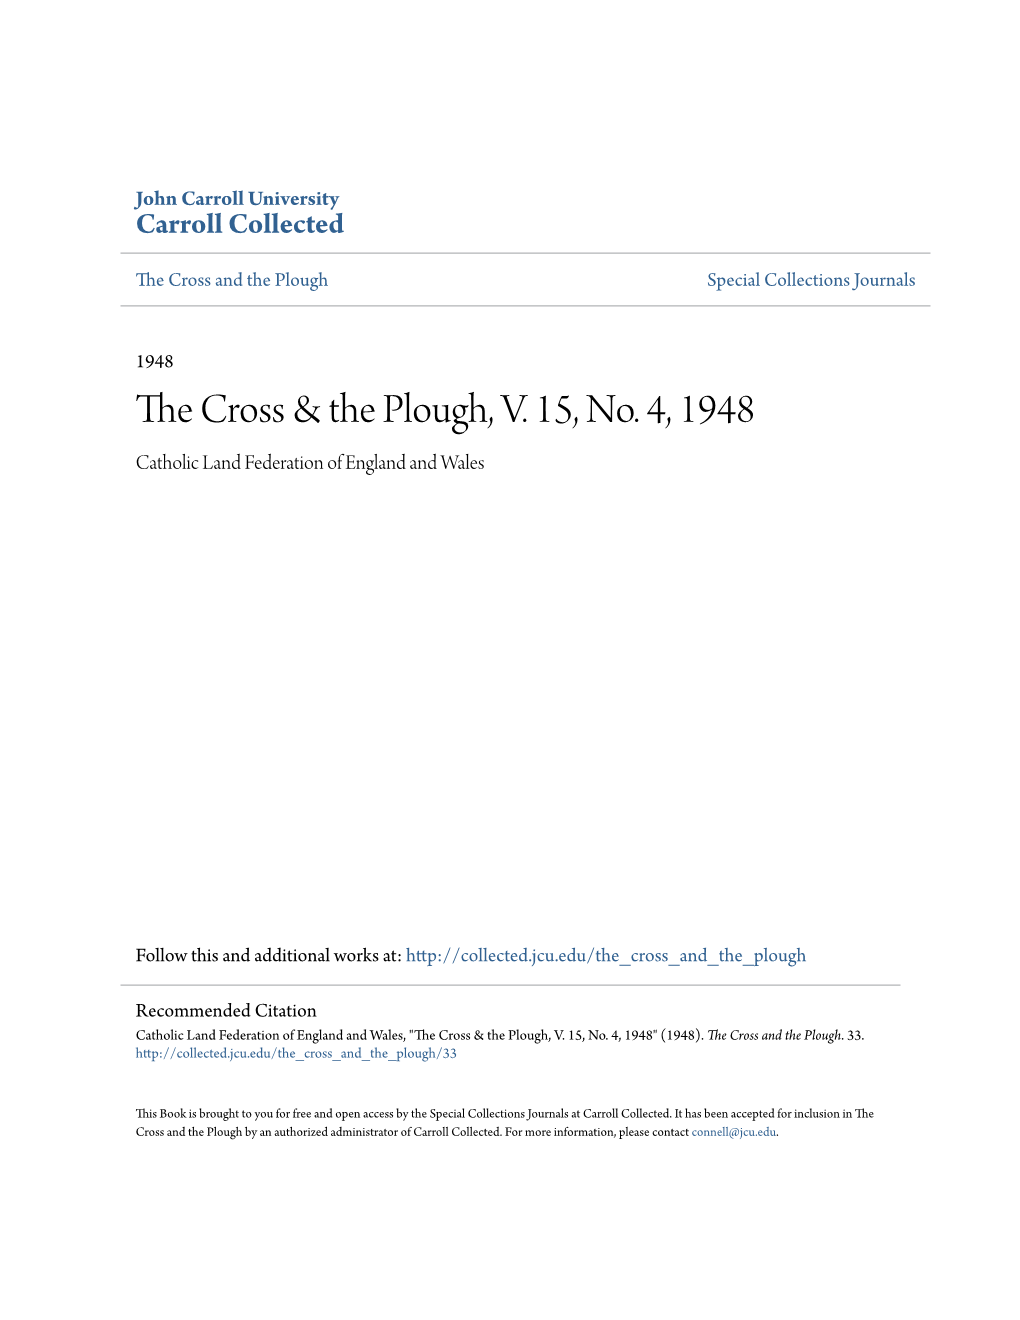 The Cross & the Plough, V. 15, No. 4, 1948